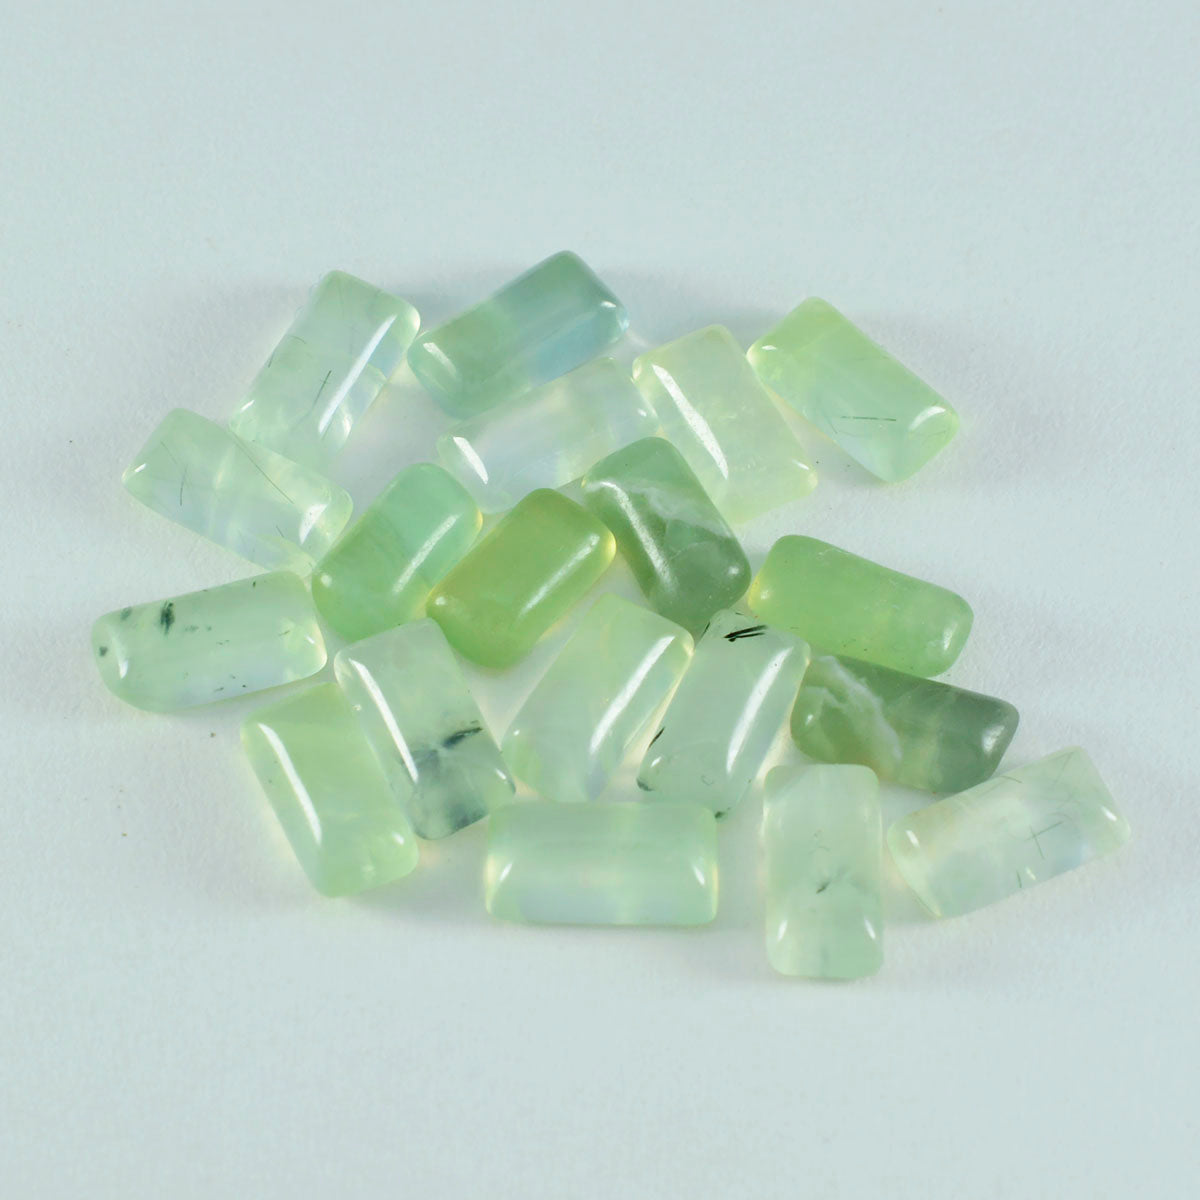 riyogems 1 шт. зеленый пренит кабошон 7x14 мм в форме багета красивый качественный драгоценный камень